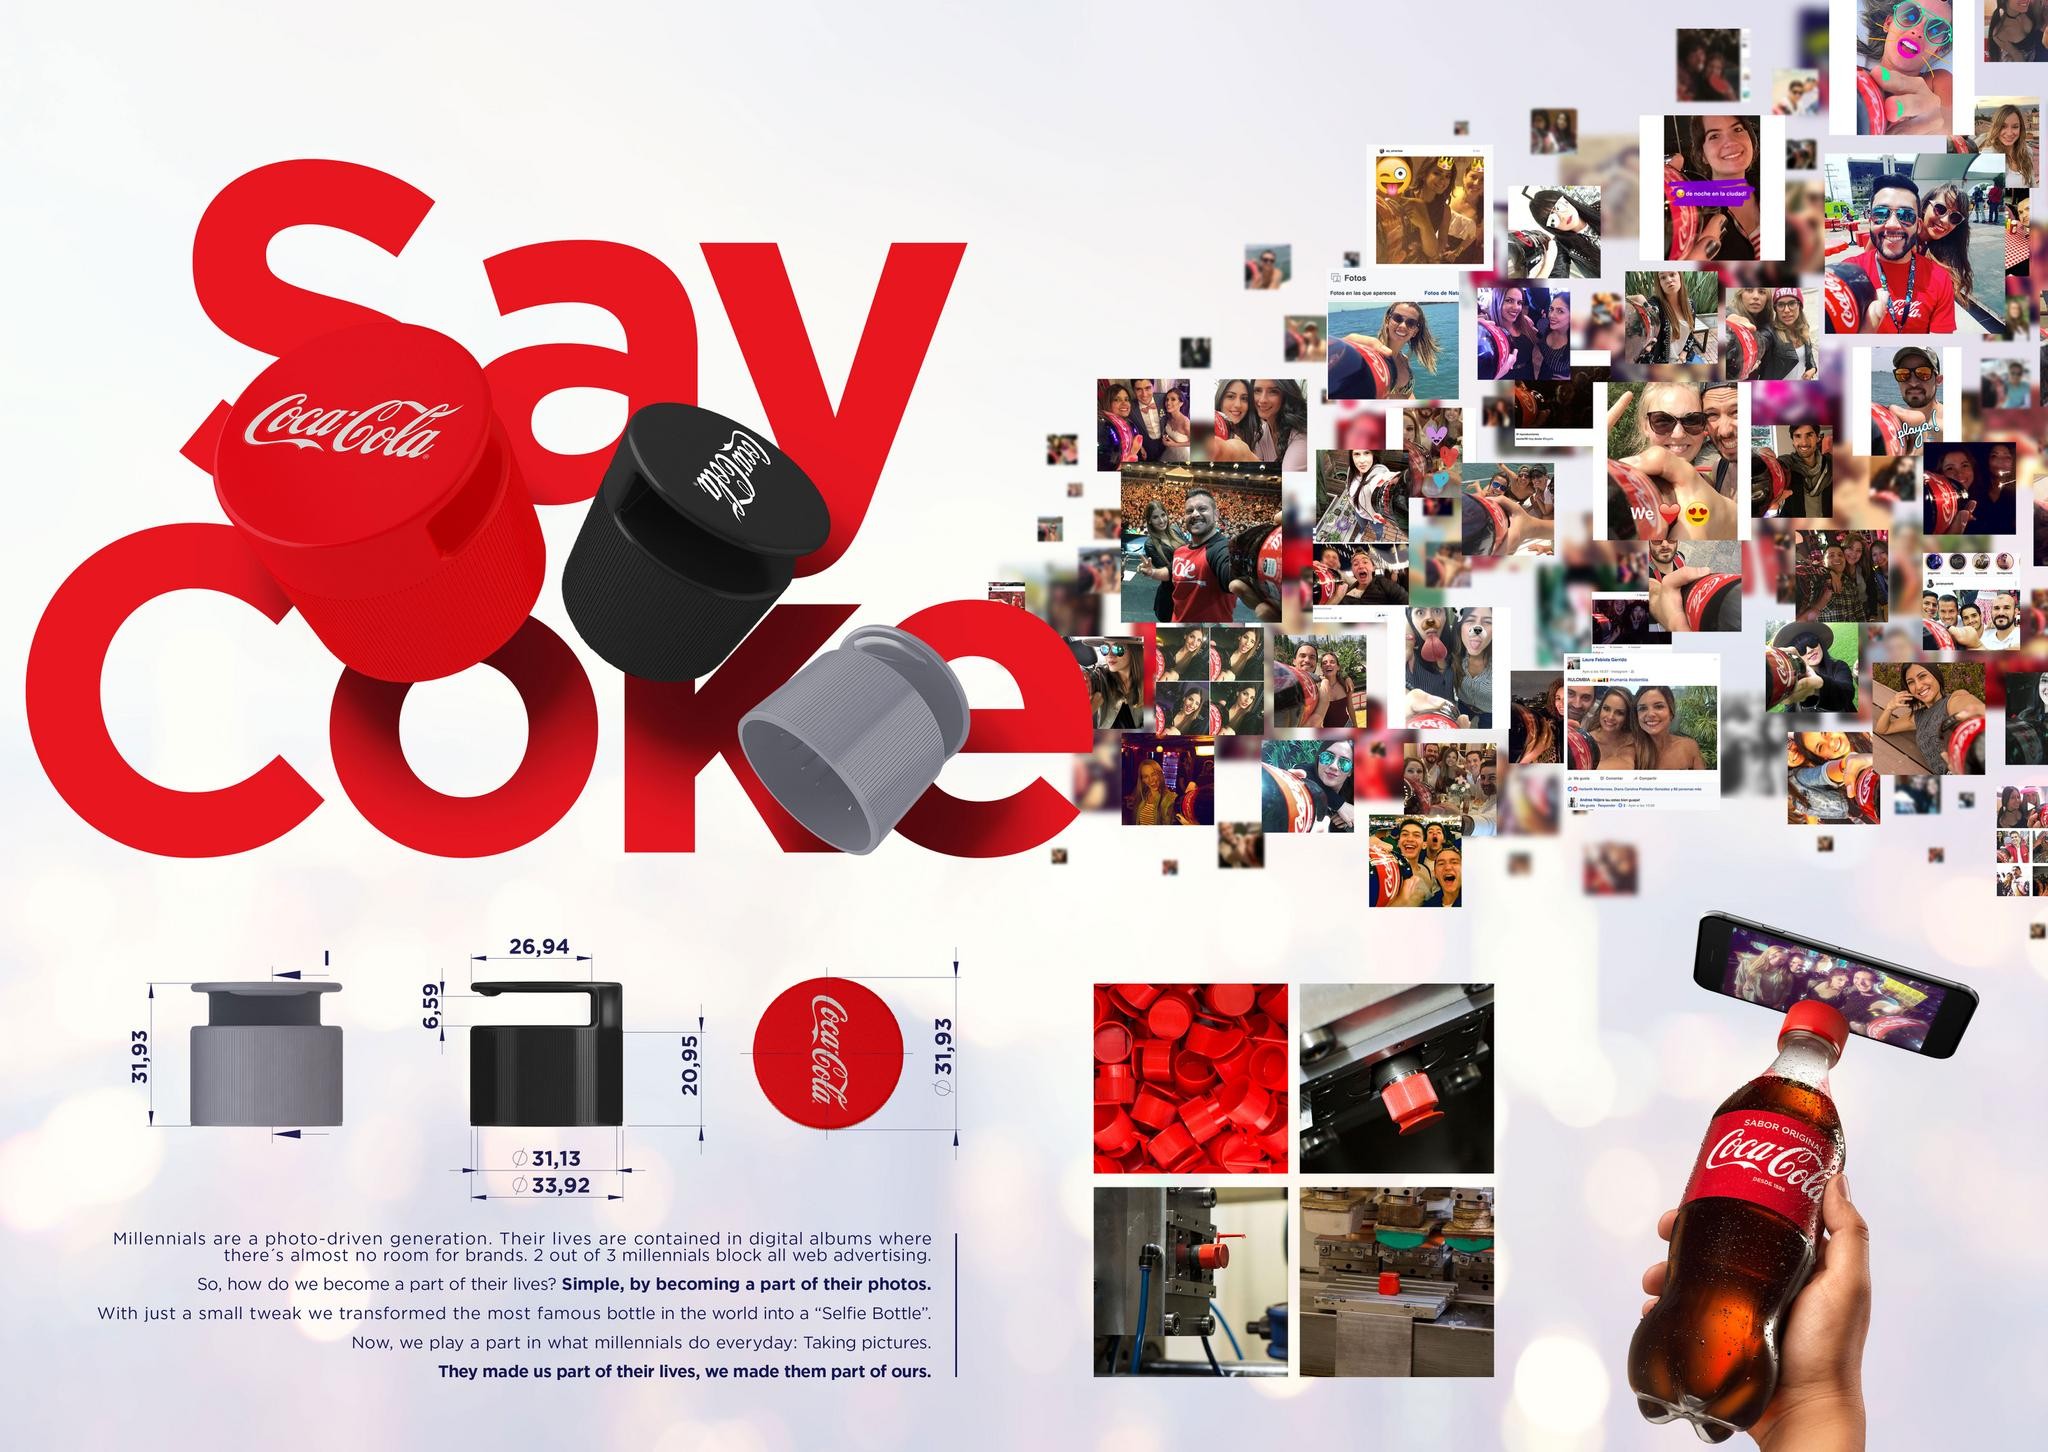 Say Coke